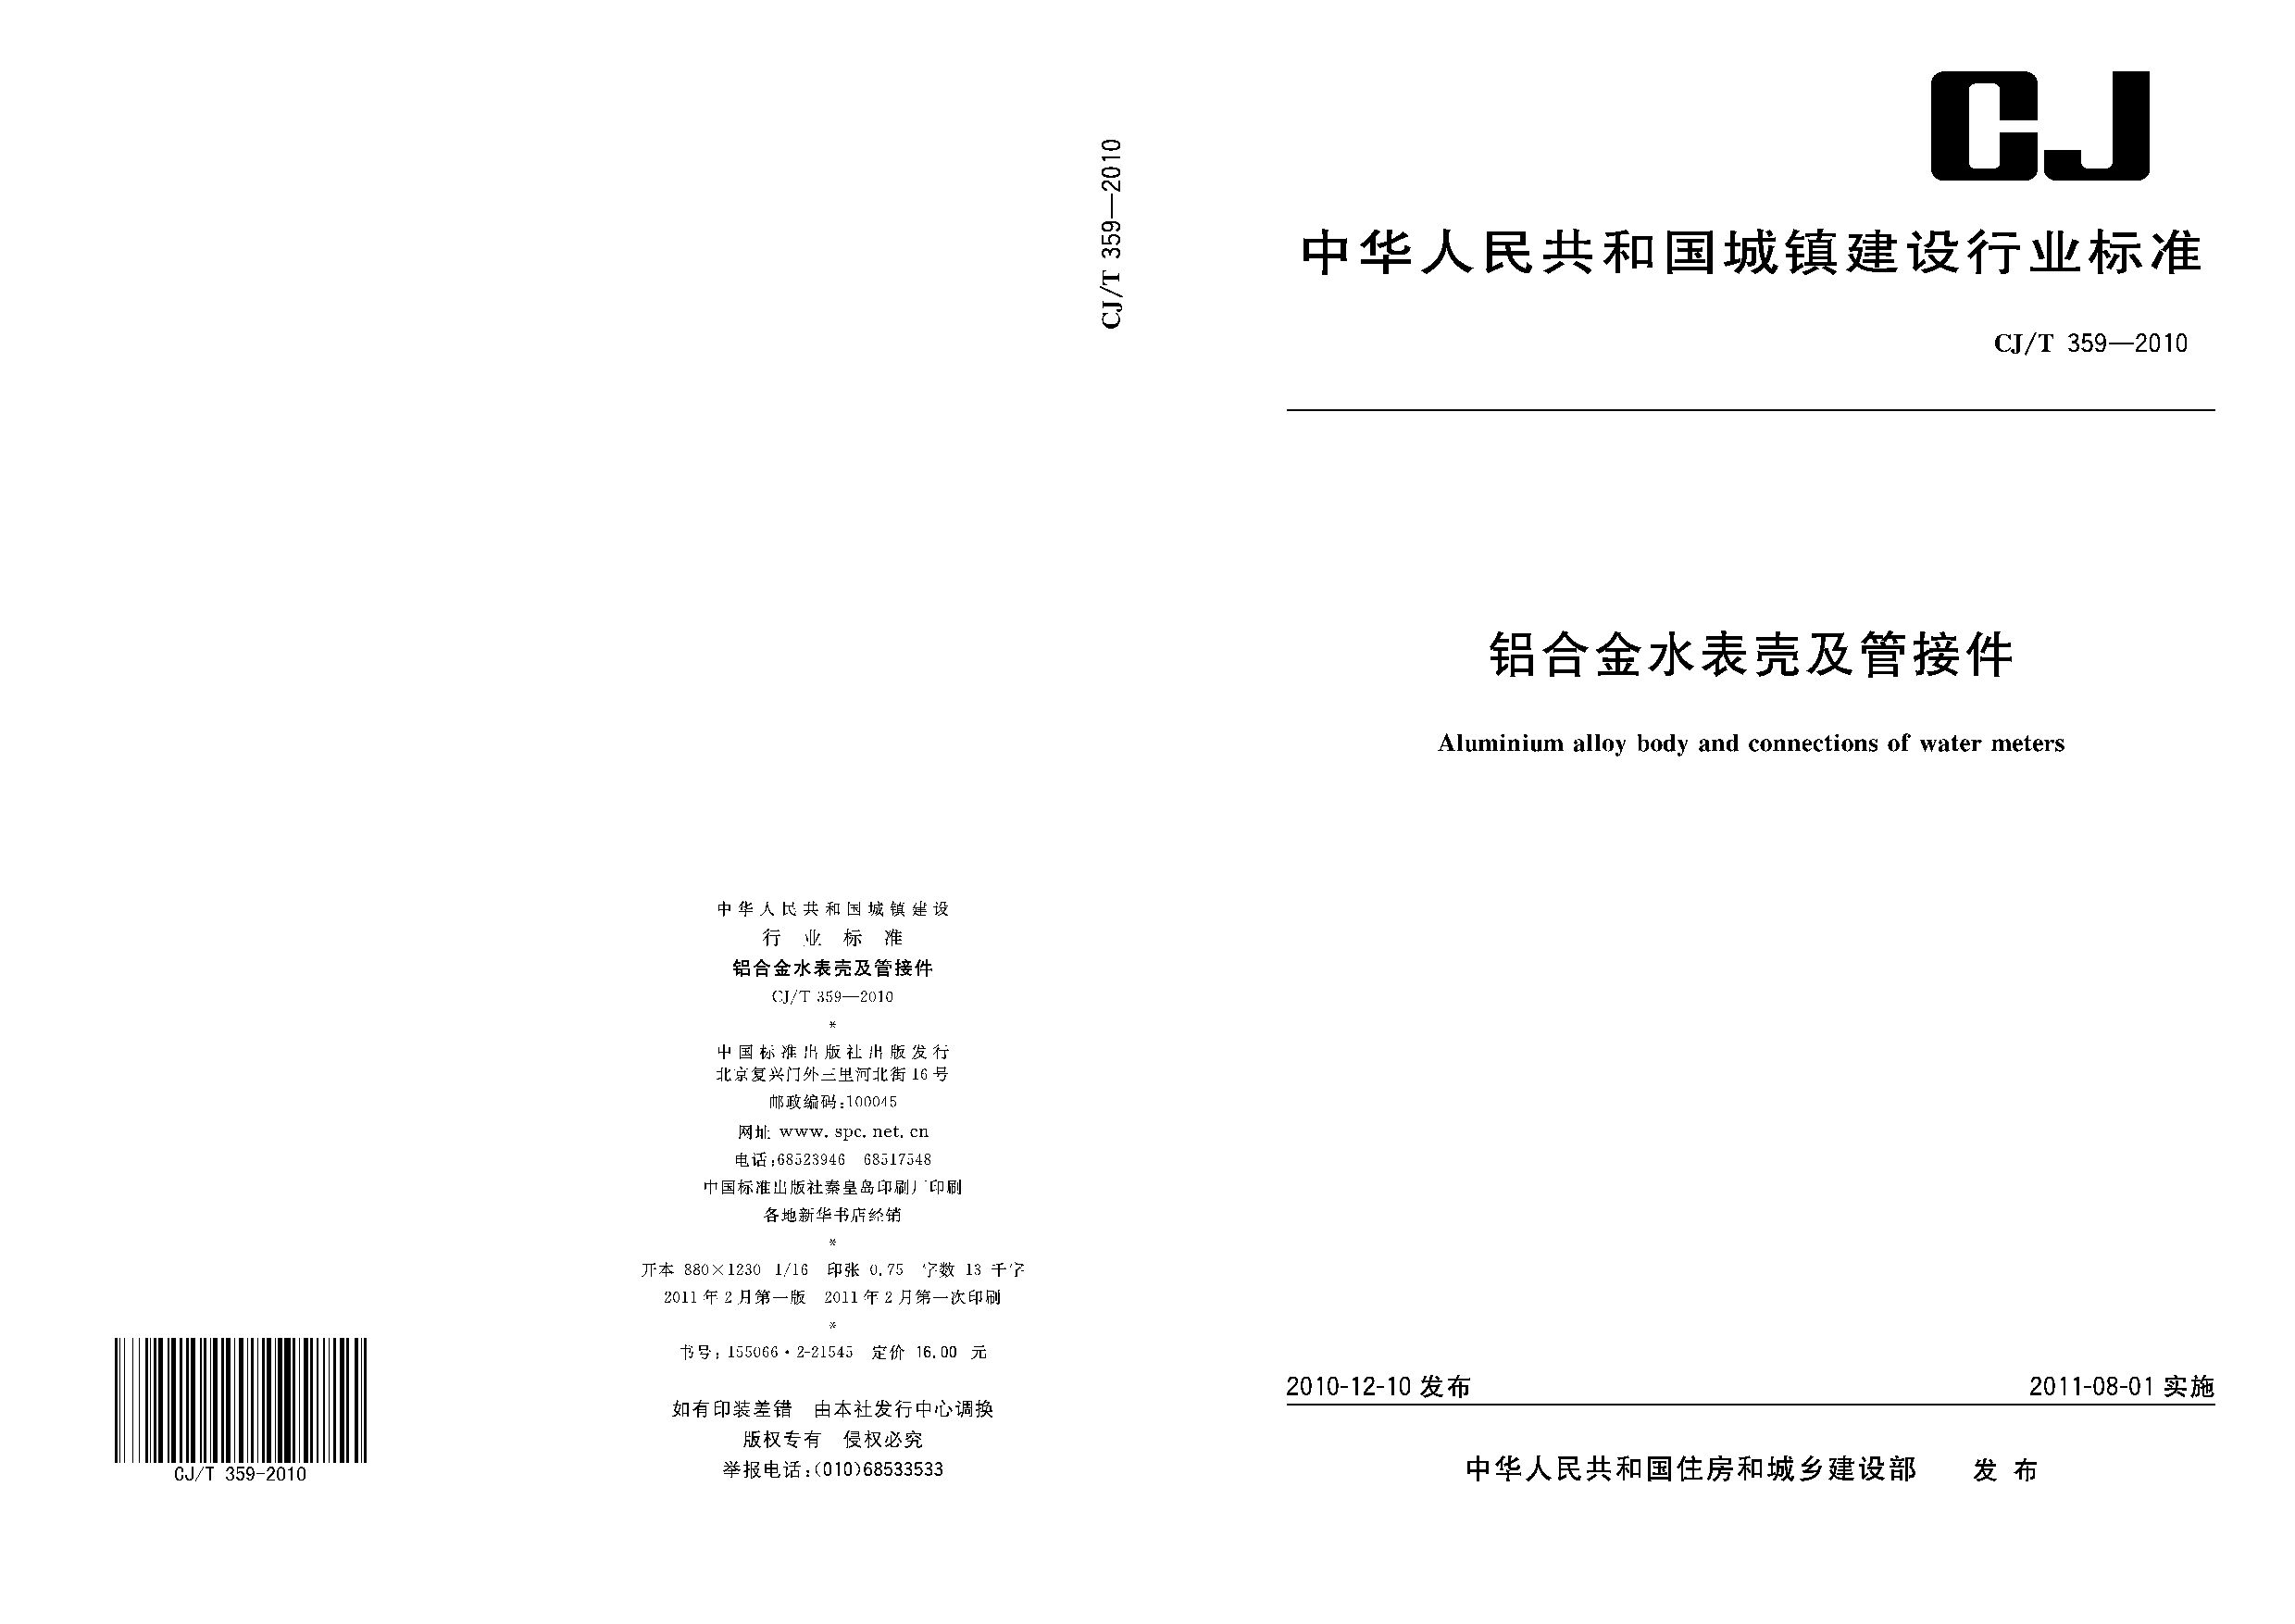 CJ/T 359-2010封面图